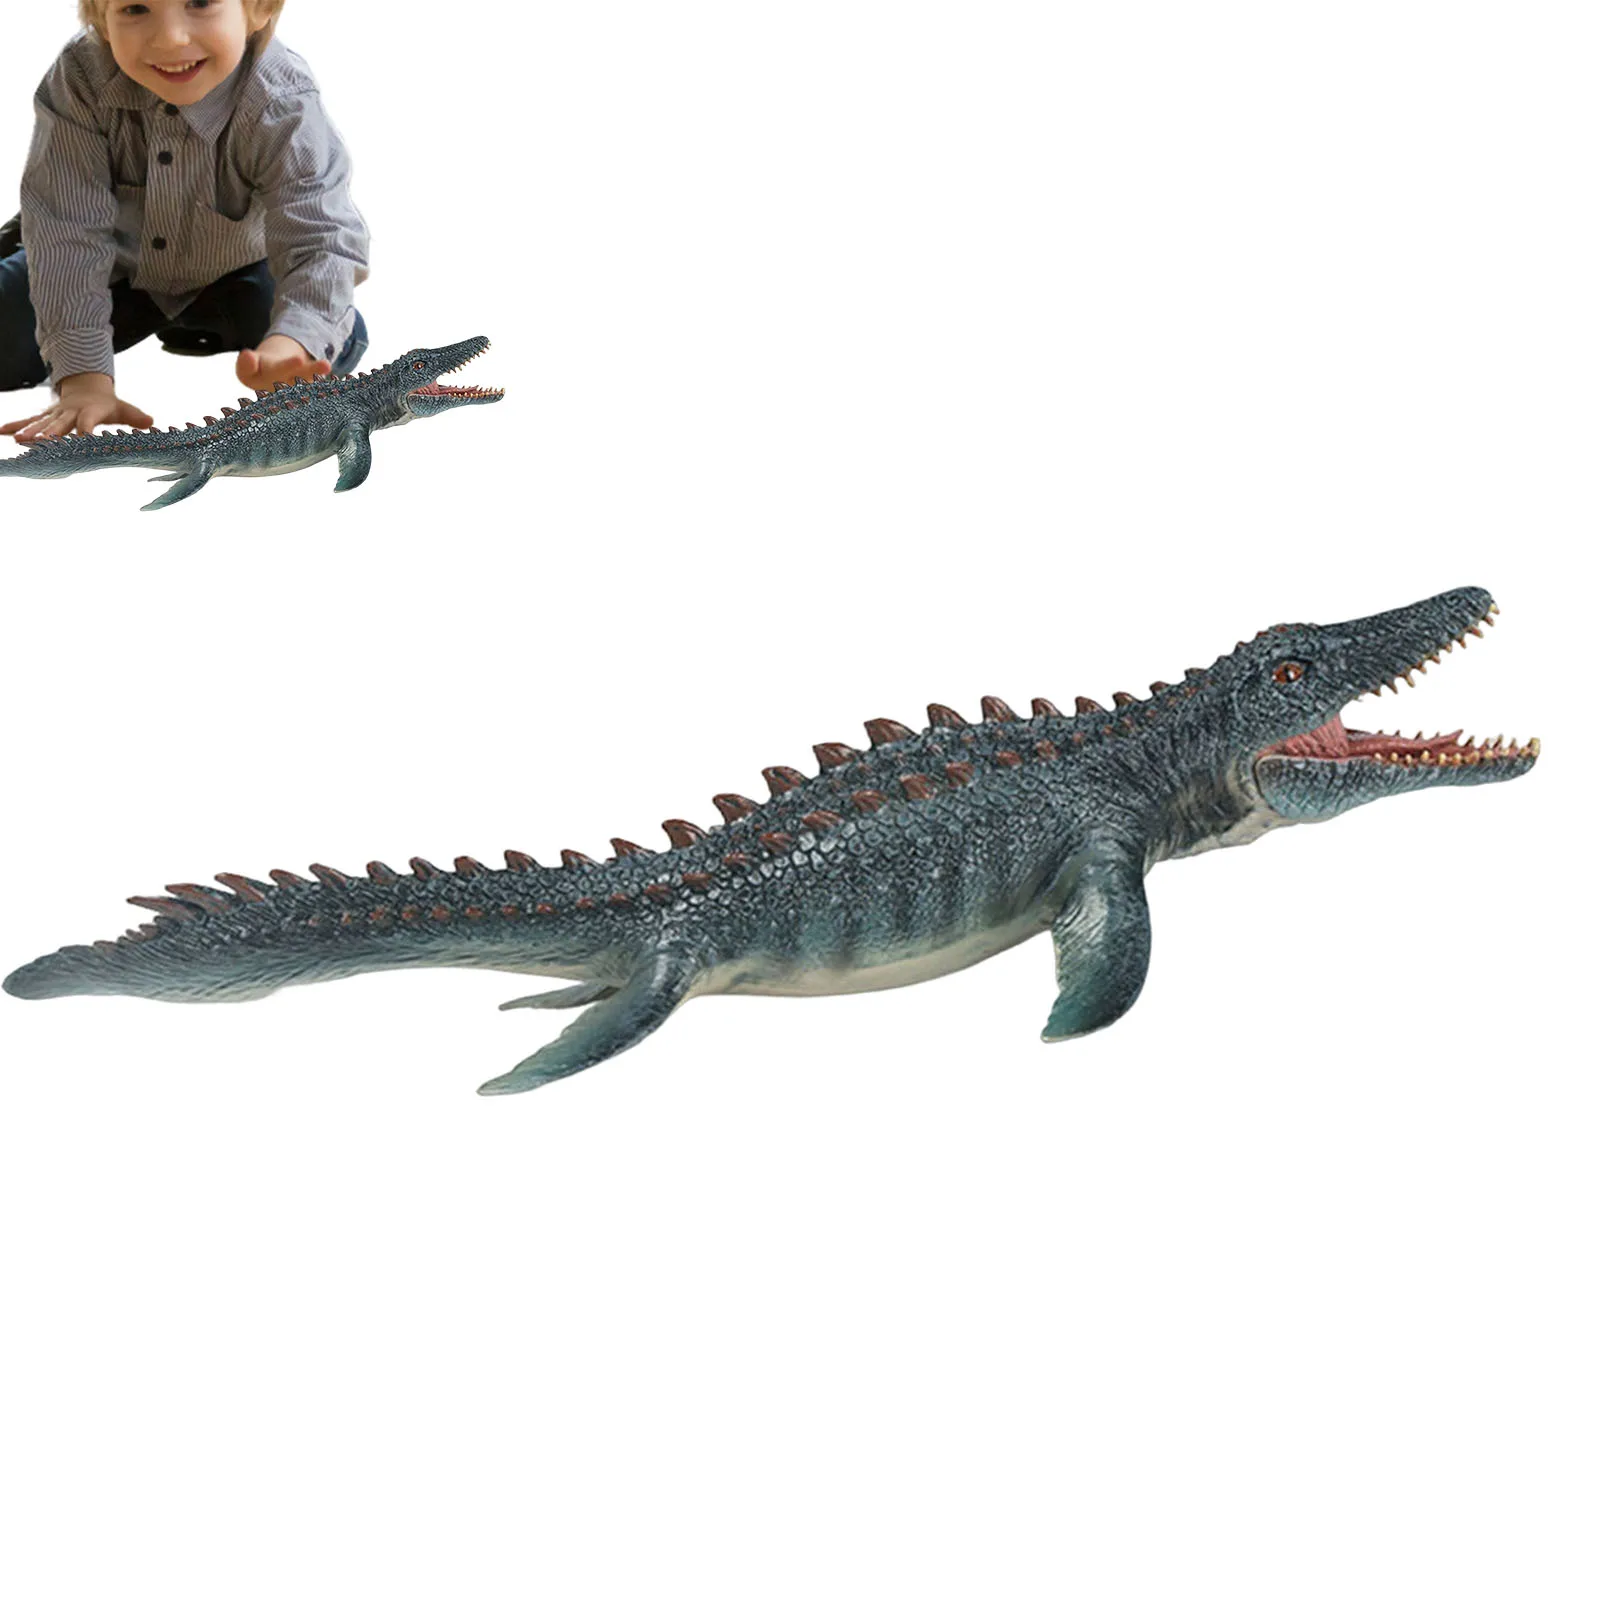 

Морской океан, имитация жизни, динозавр, модель животного, мосазавр, экшн-фигурки, модель динозавра Юрского периода, детская игрушка